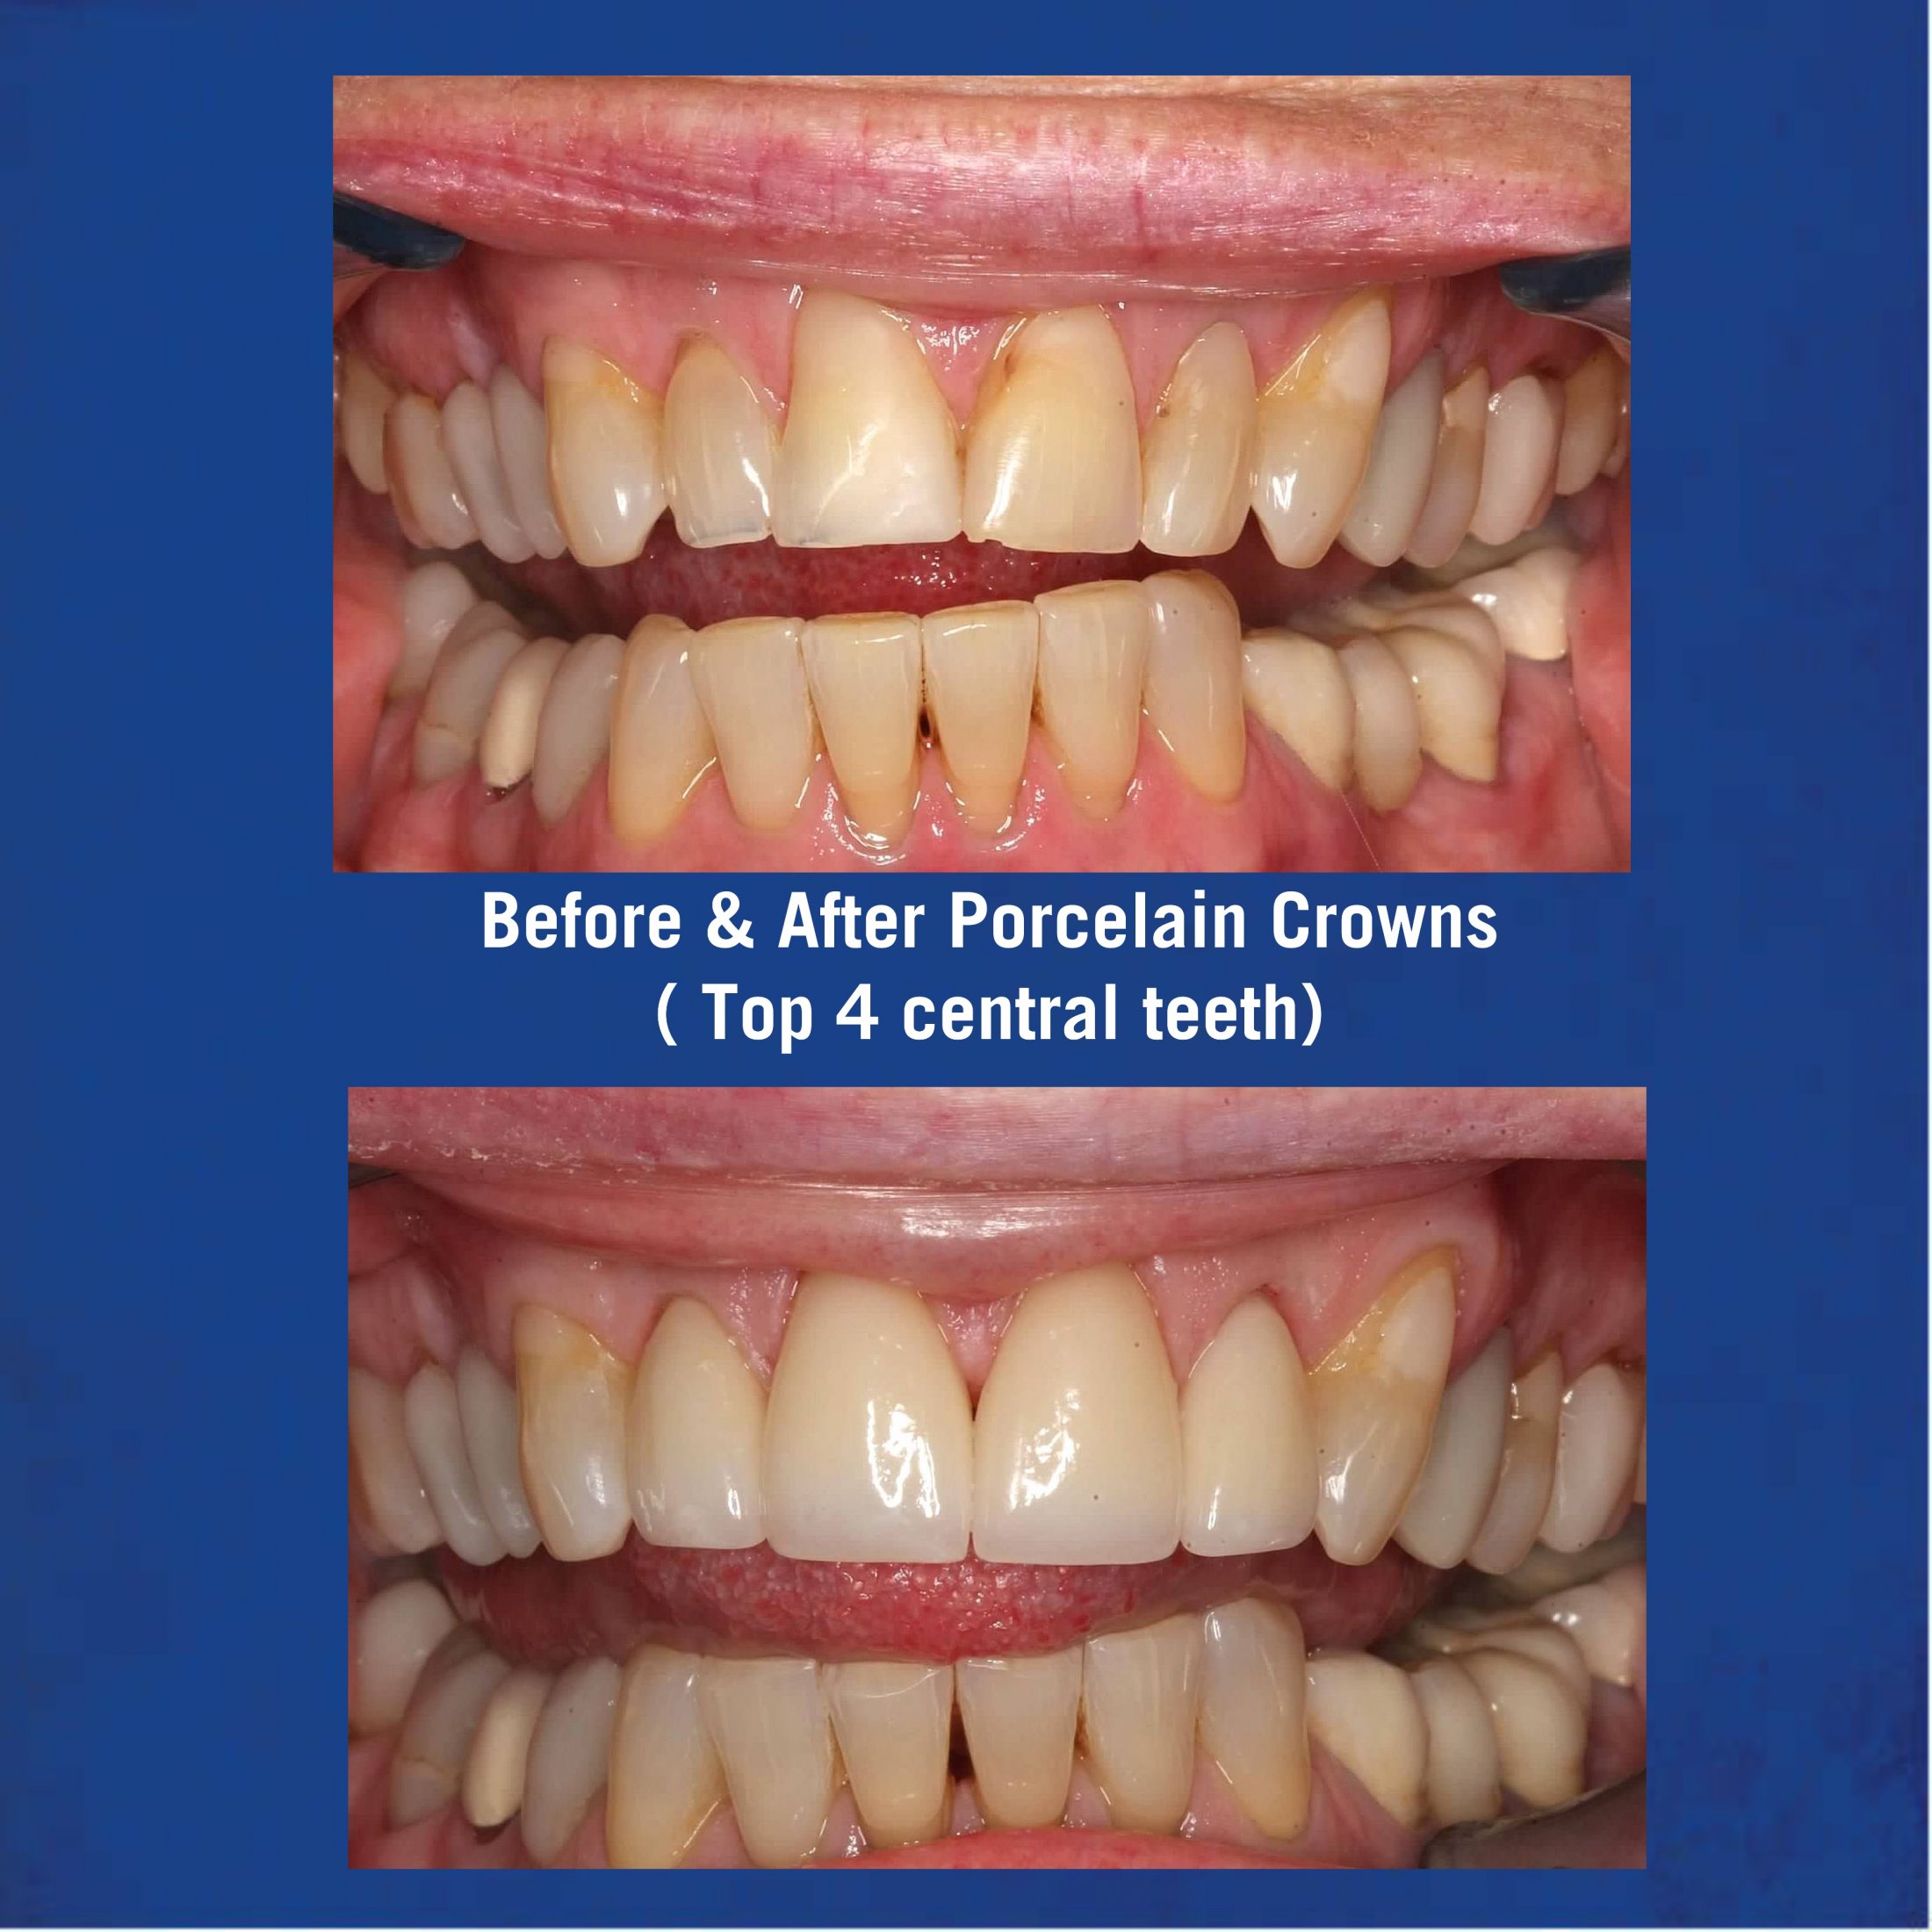 Before & After Porcelain Veneers - Top 4 Central Teeth